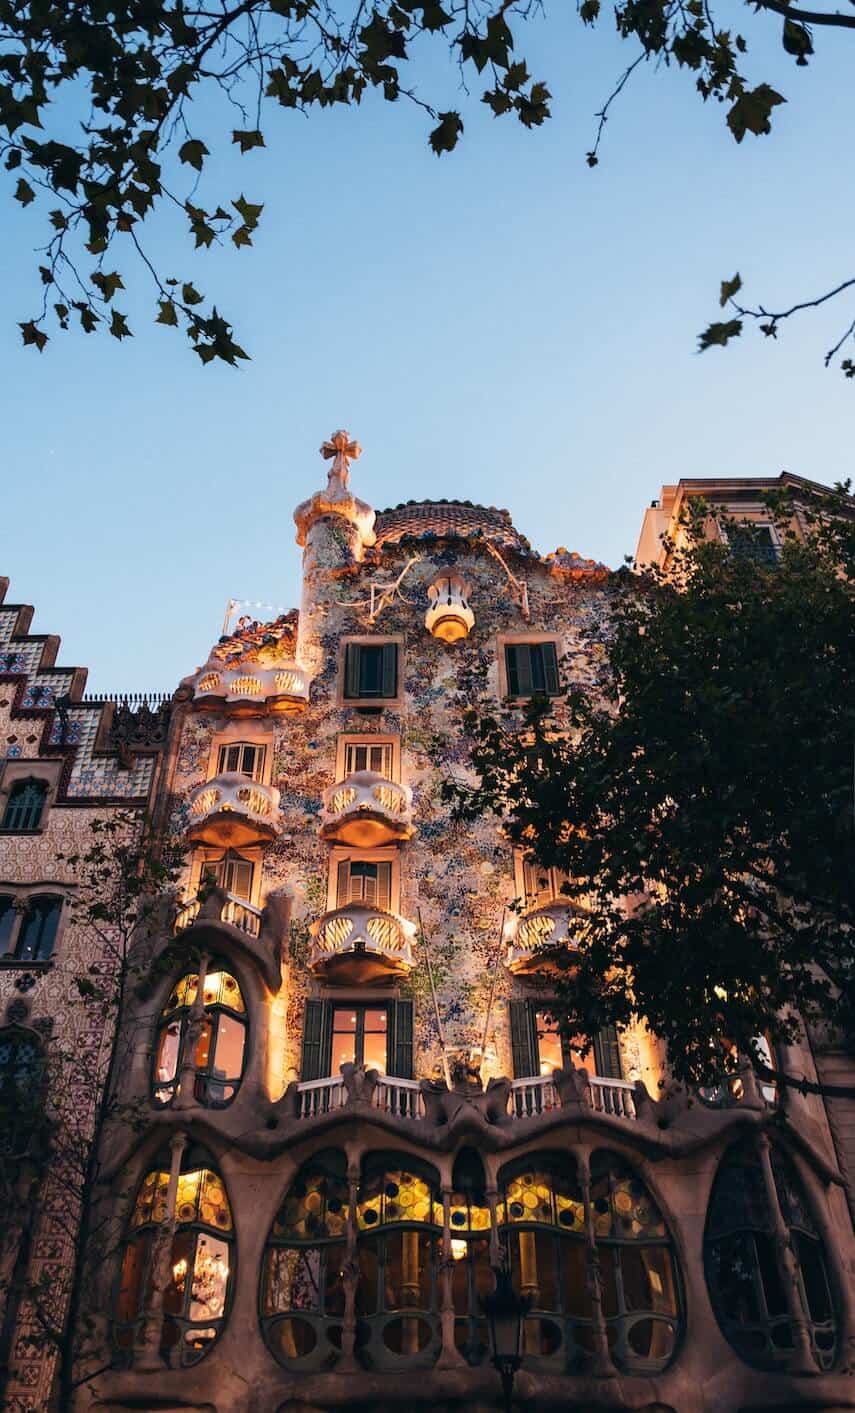 Casa Batlo in Barcelona, lit up at night